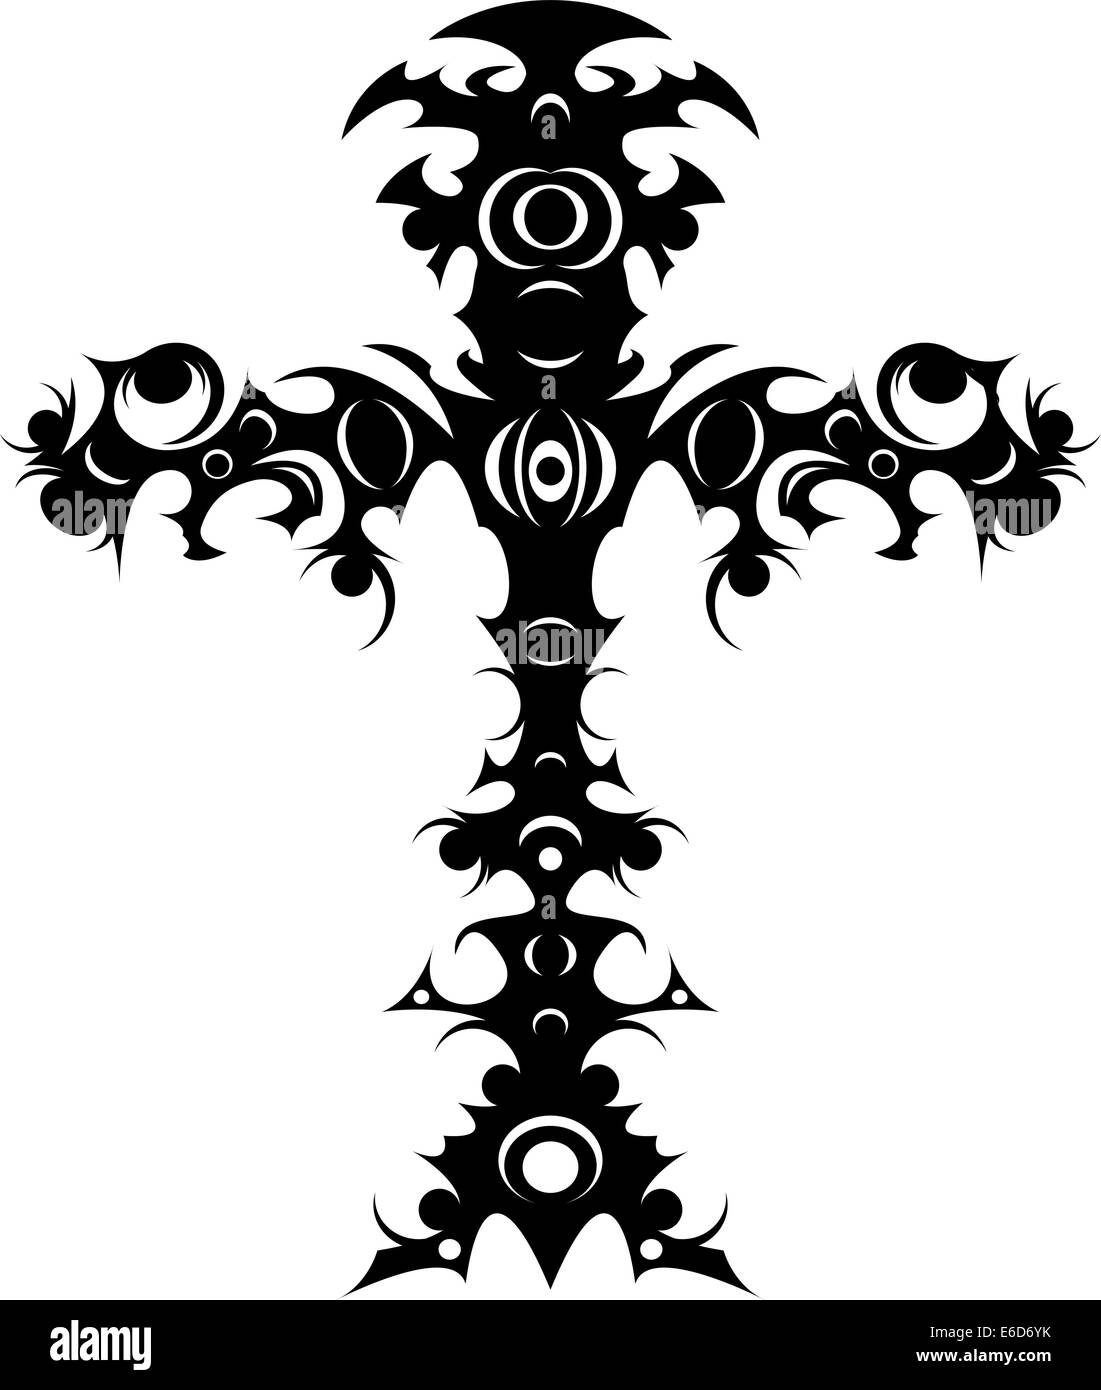 Editierbare Vektor-Illustration von einer reich verzierten tribal Kreuz tattoo Stock Vektor